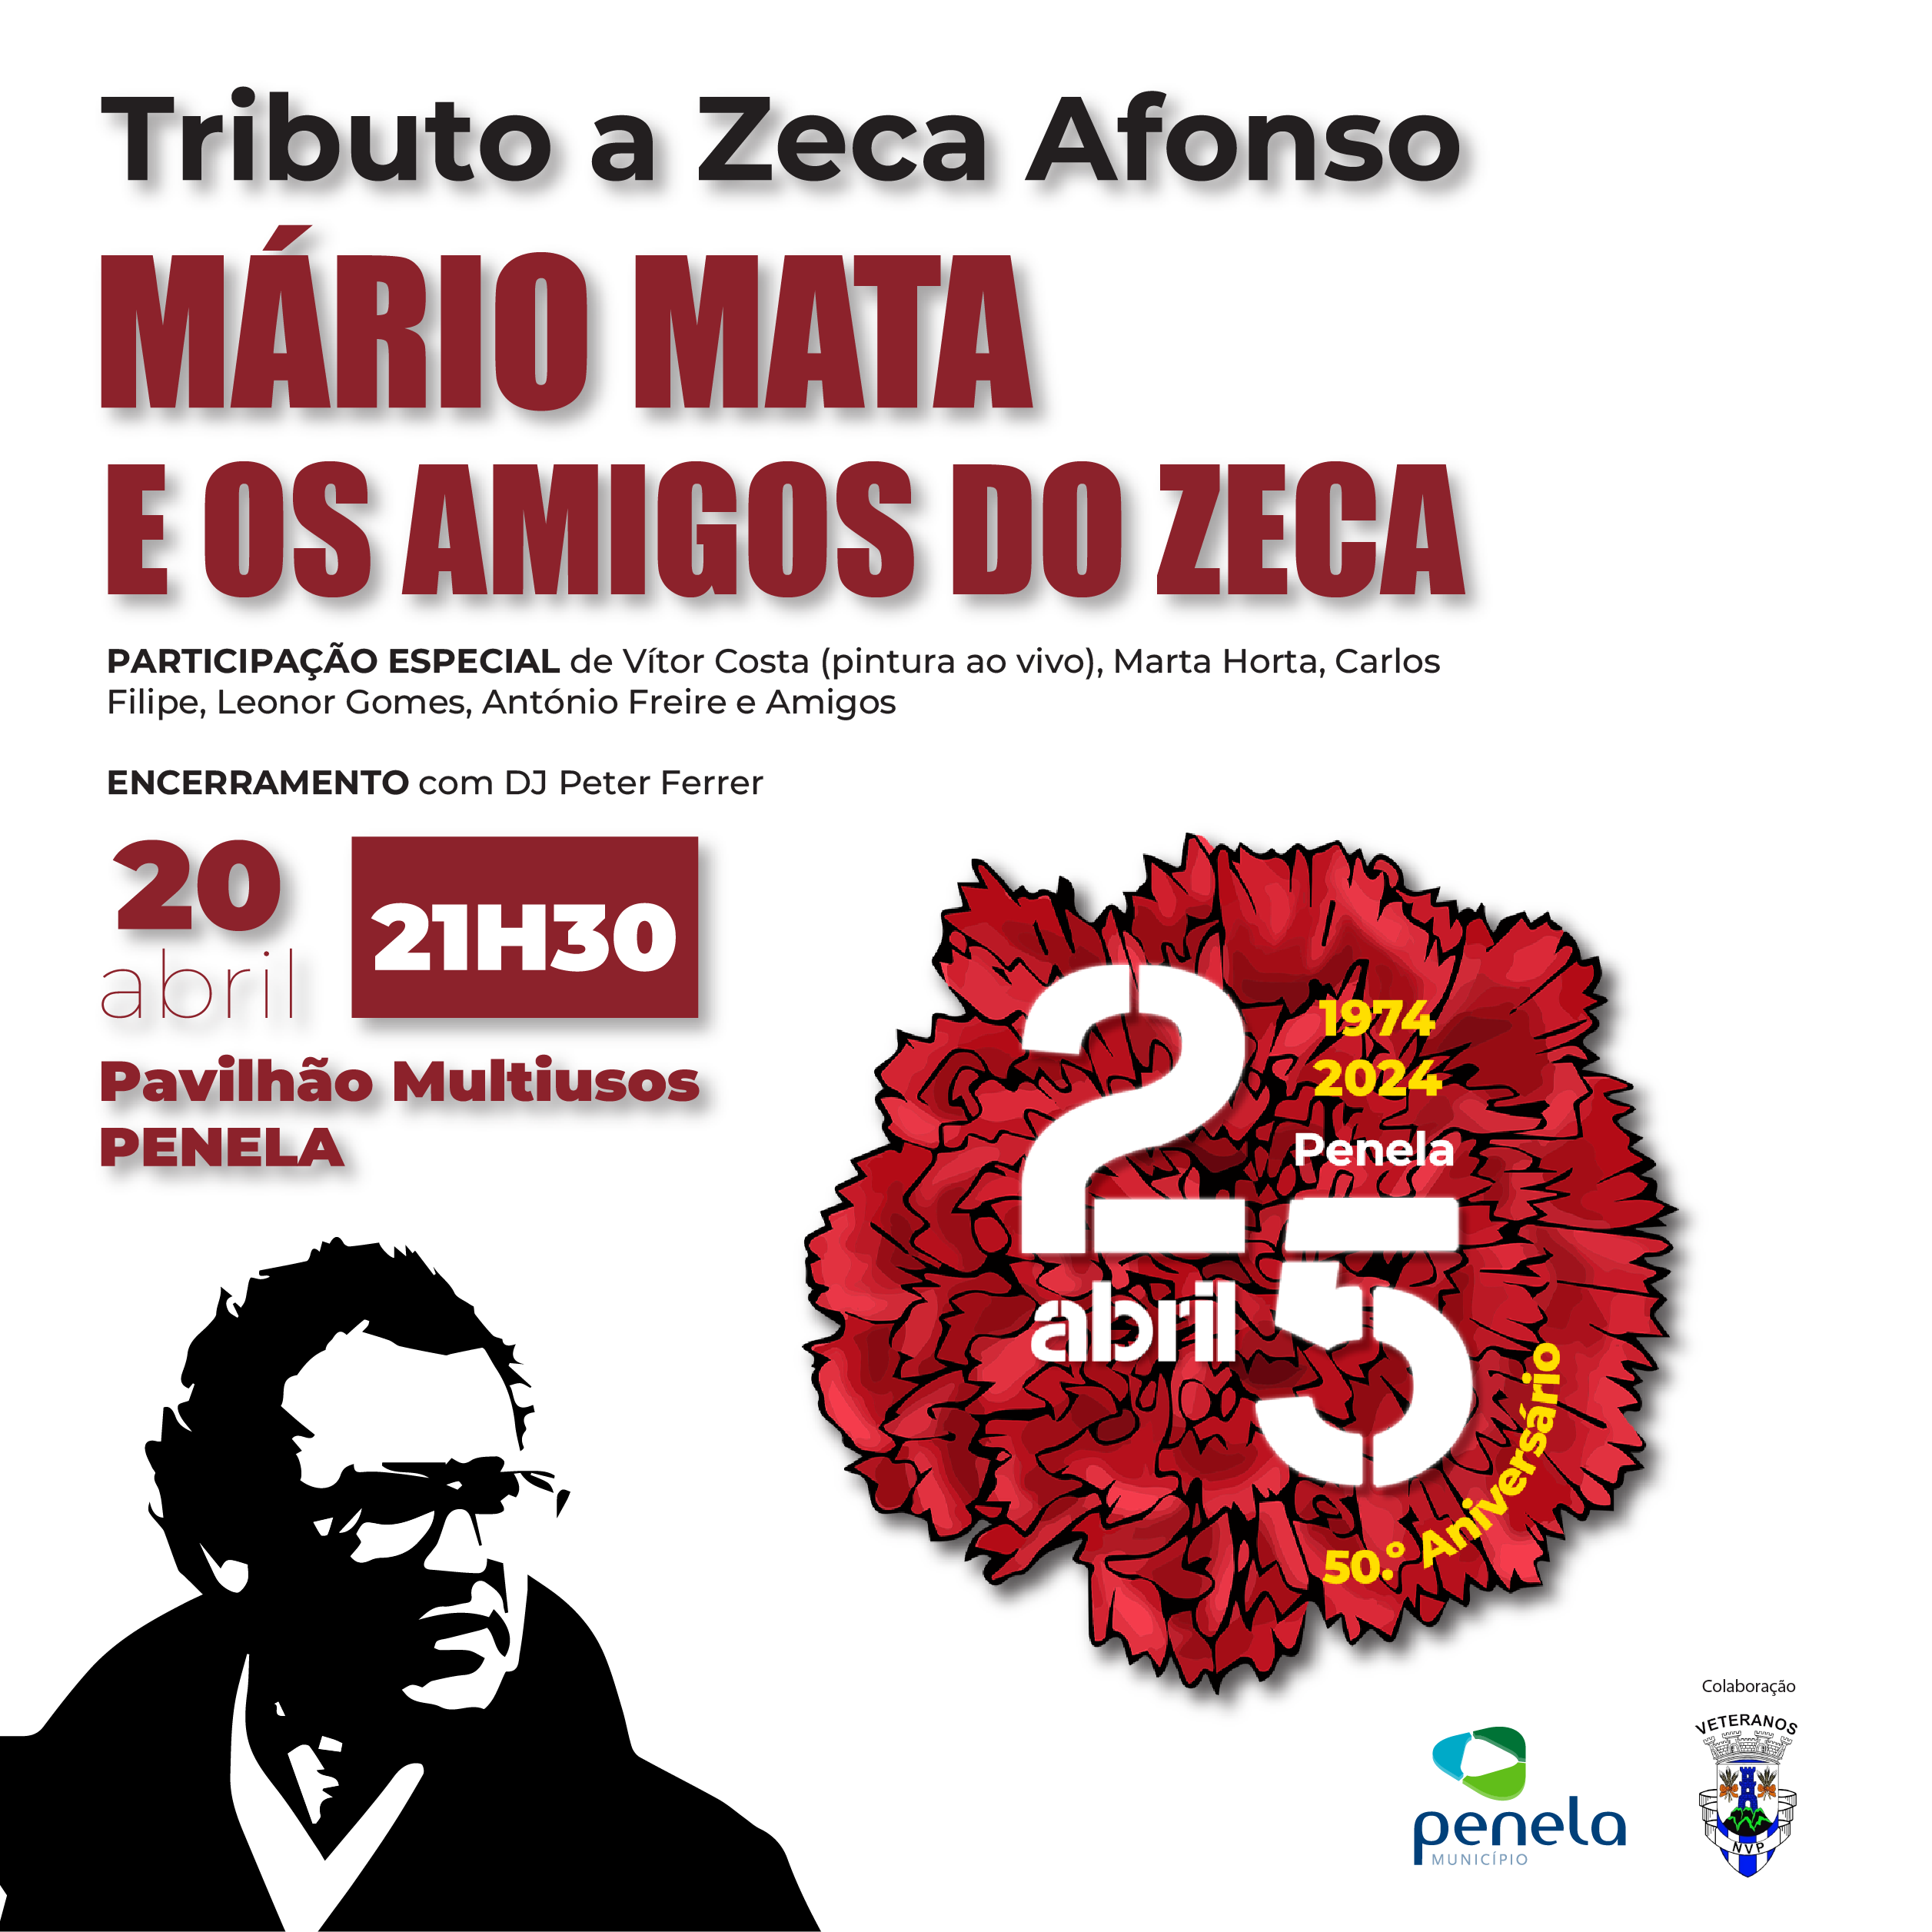 Tributo a Zeca Afonso com Mário Mata e os Amigos do Zeca, no dia 20 de abril, no Pavilhão Multiusos